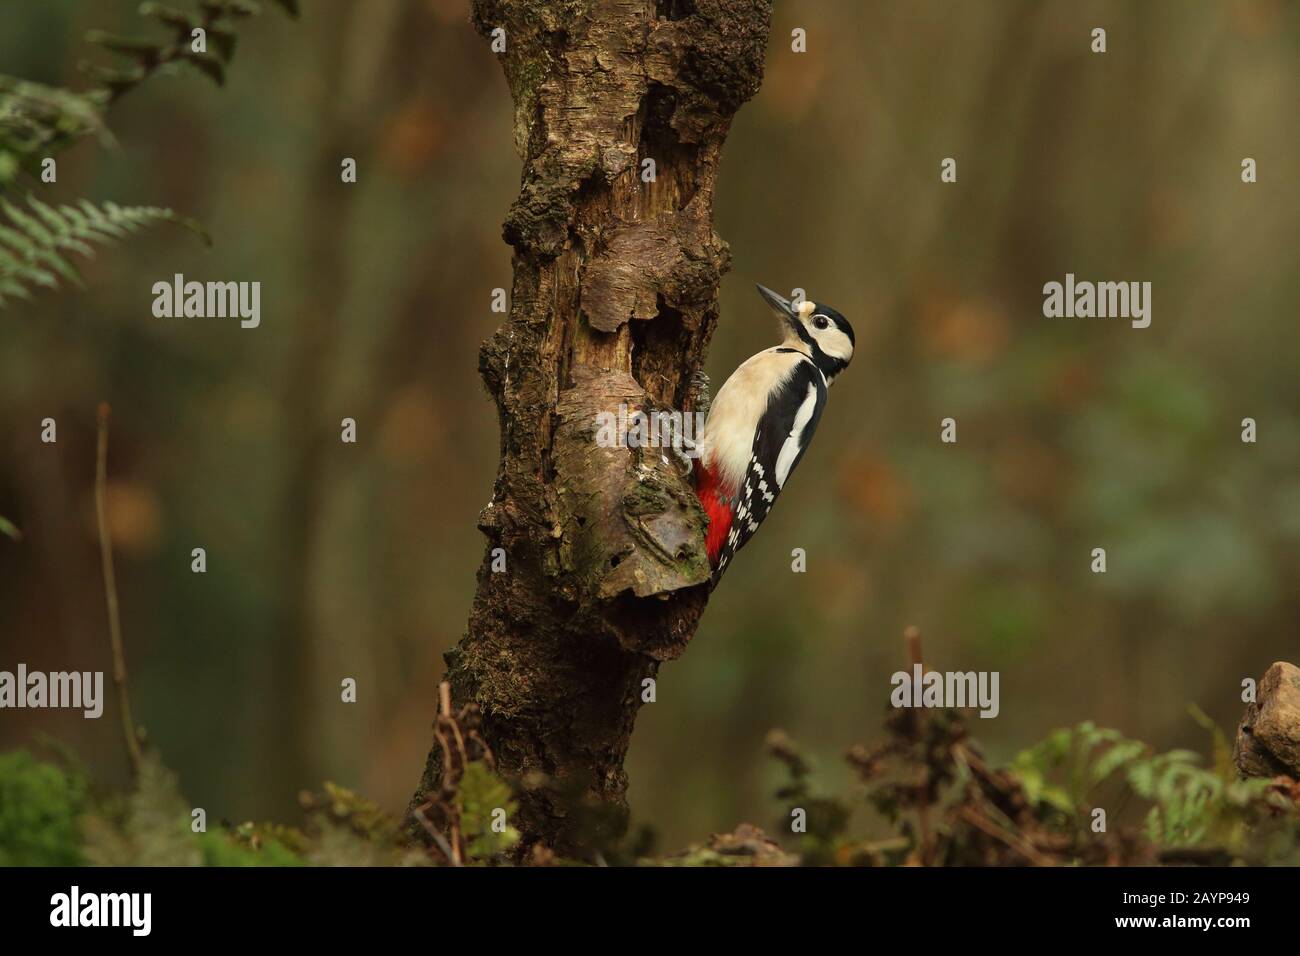 Gran pájaro carpintero de topos subiendo un árbol en el bosque (pájaro de bosque y bosques) Foto de stock